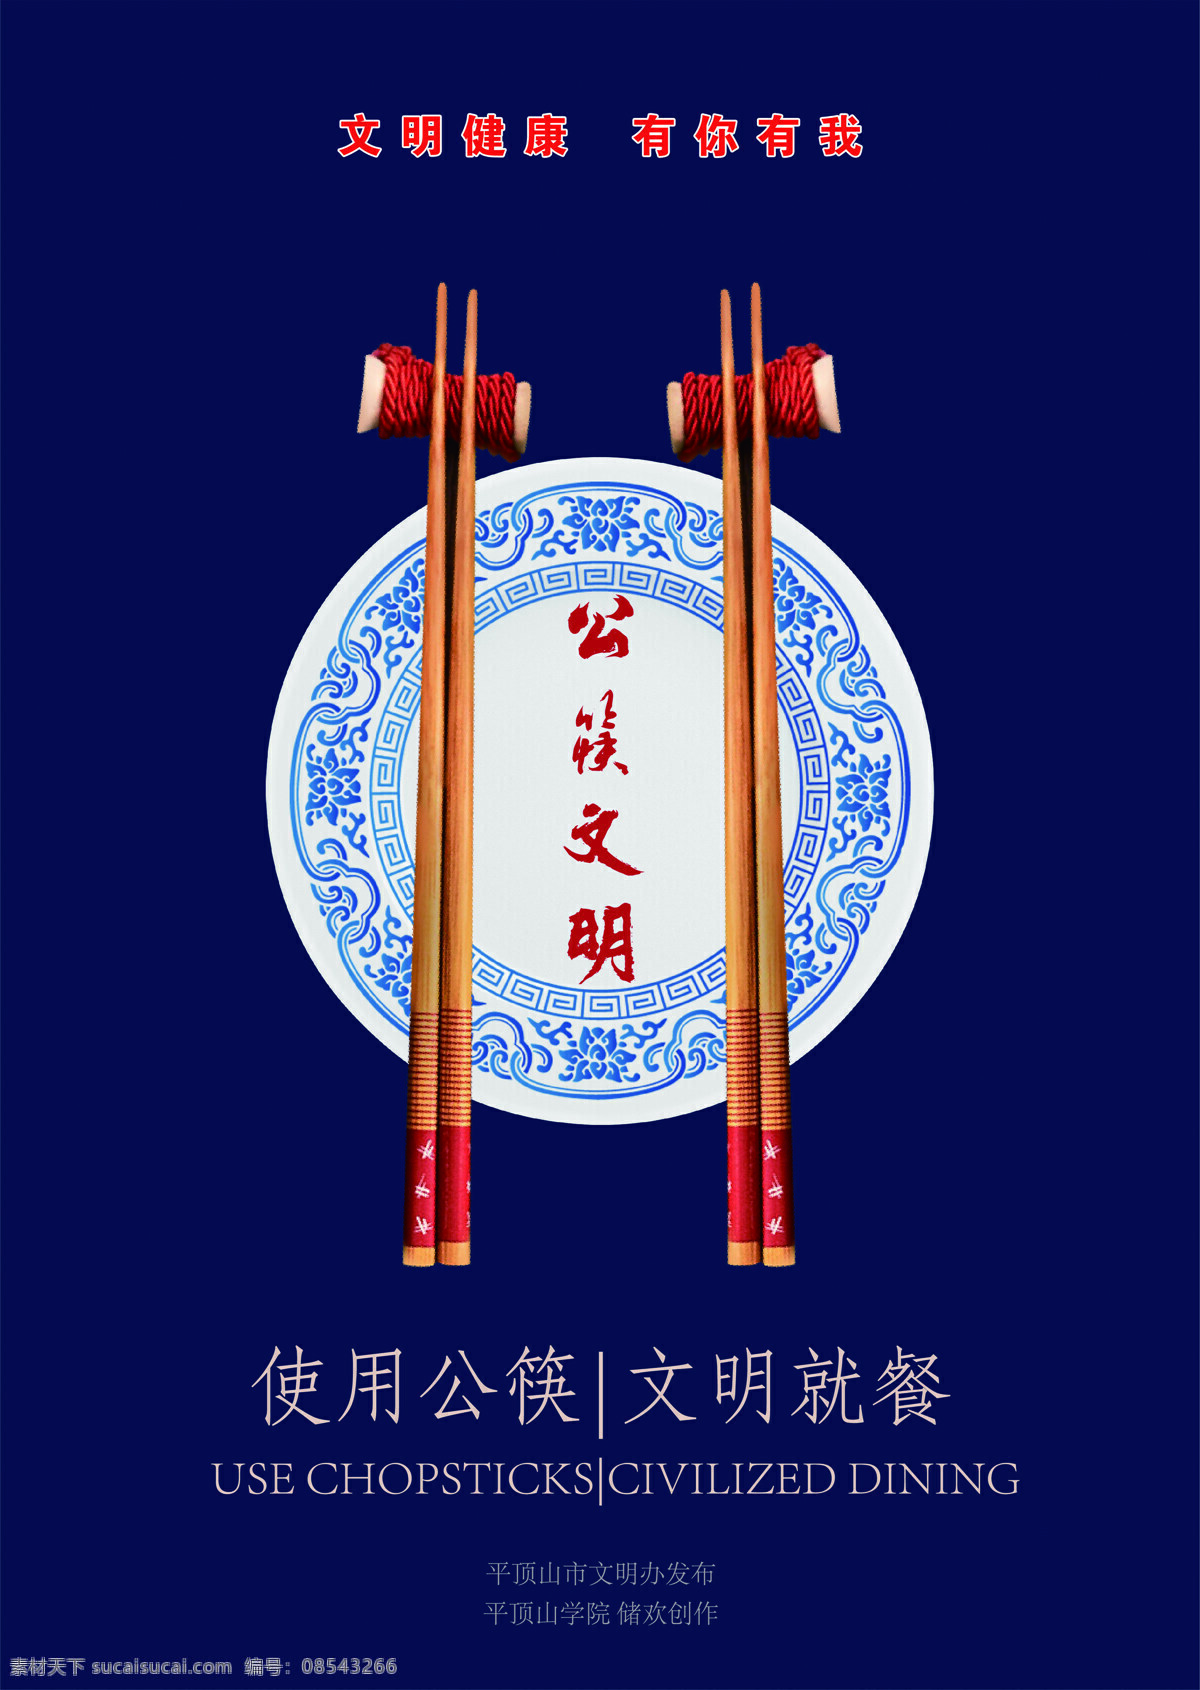 公筷文明 文明就餐 文明健康 光盘 行动